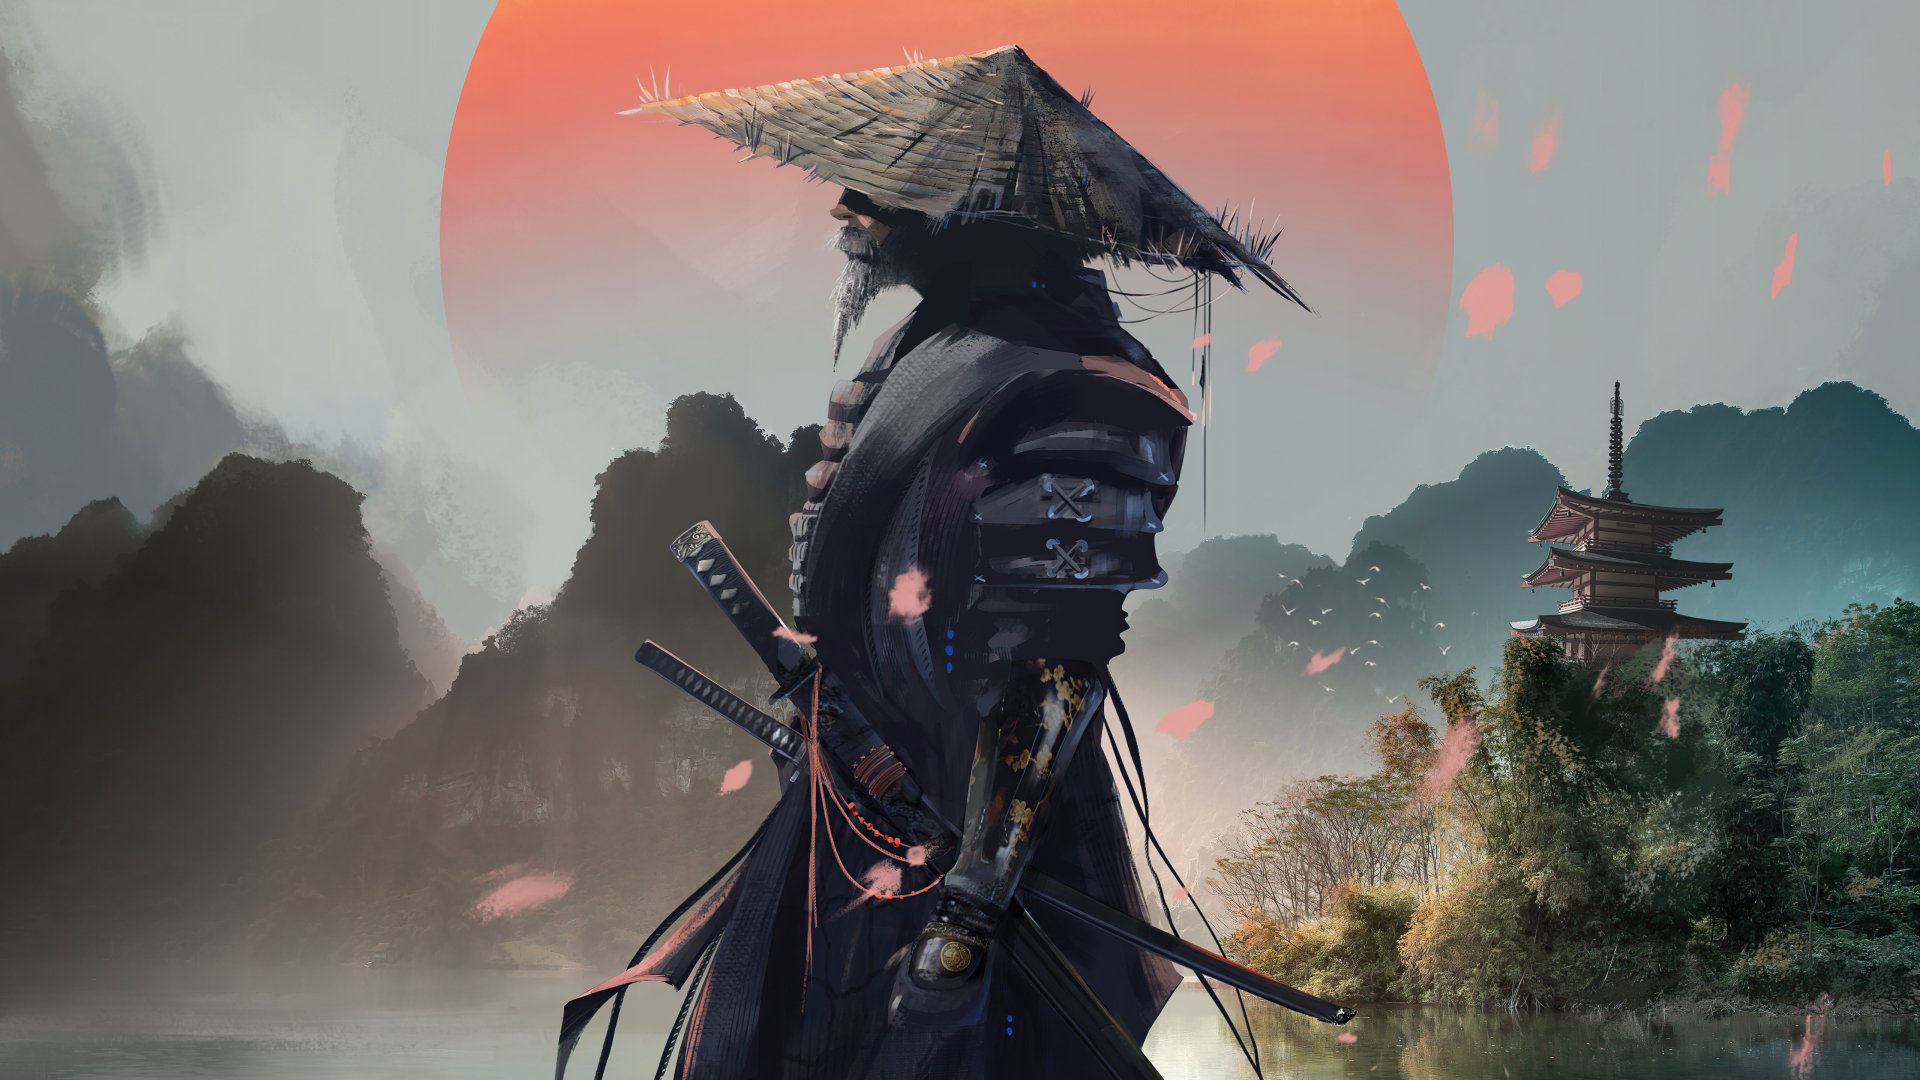 Hình nền samurai thần thoại 4K là một bộ sưu tập tuyệt vời để thể hiện sự yêu thích và niềm đam mê với kiếm sĩ samurai, chủ đề thần thoại và đẹp 4K. Những tín đồ công nghệ sẽ tìm thấy đường dẫn đến tâm trí của mình trong những bức hình này.